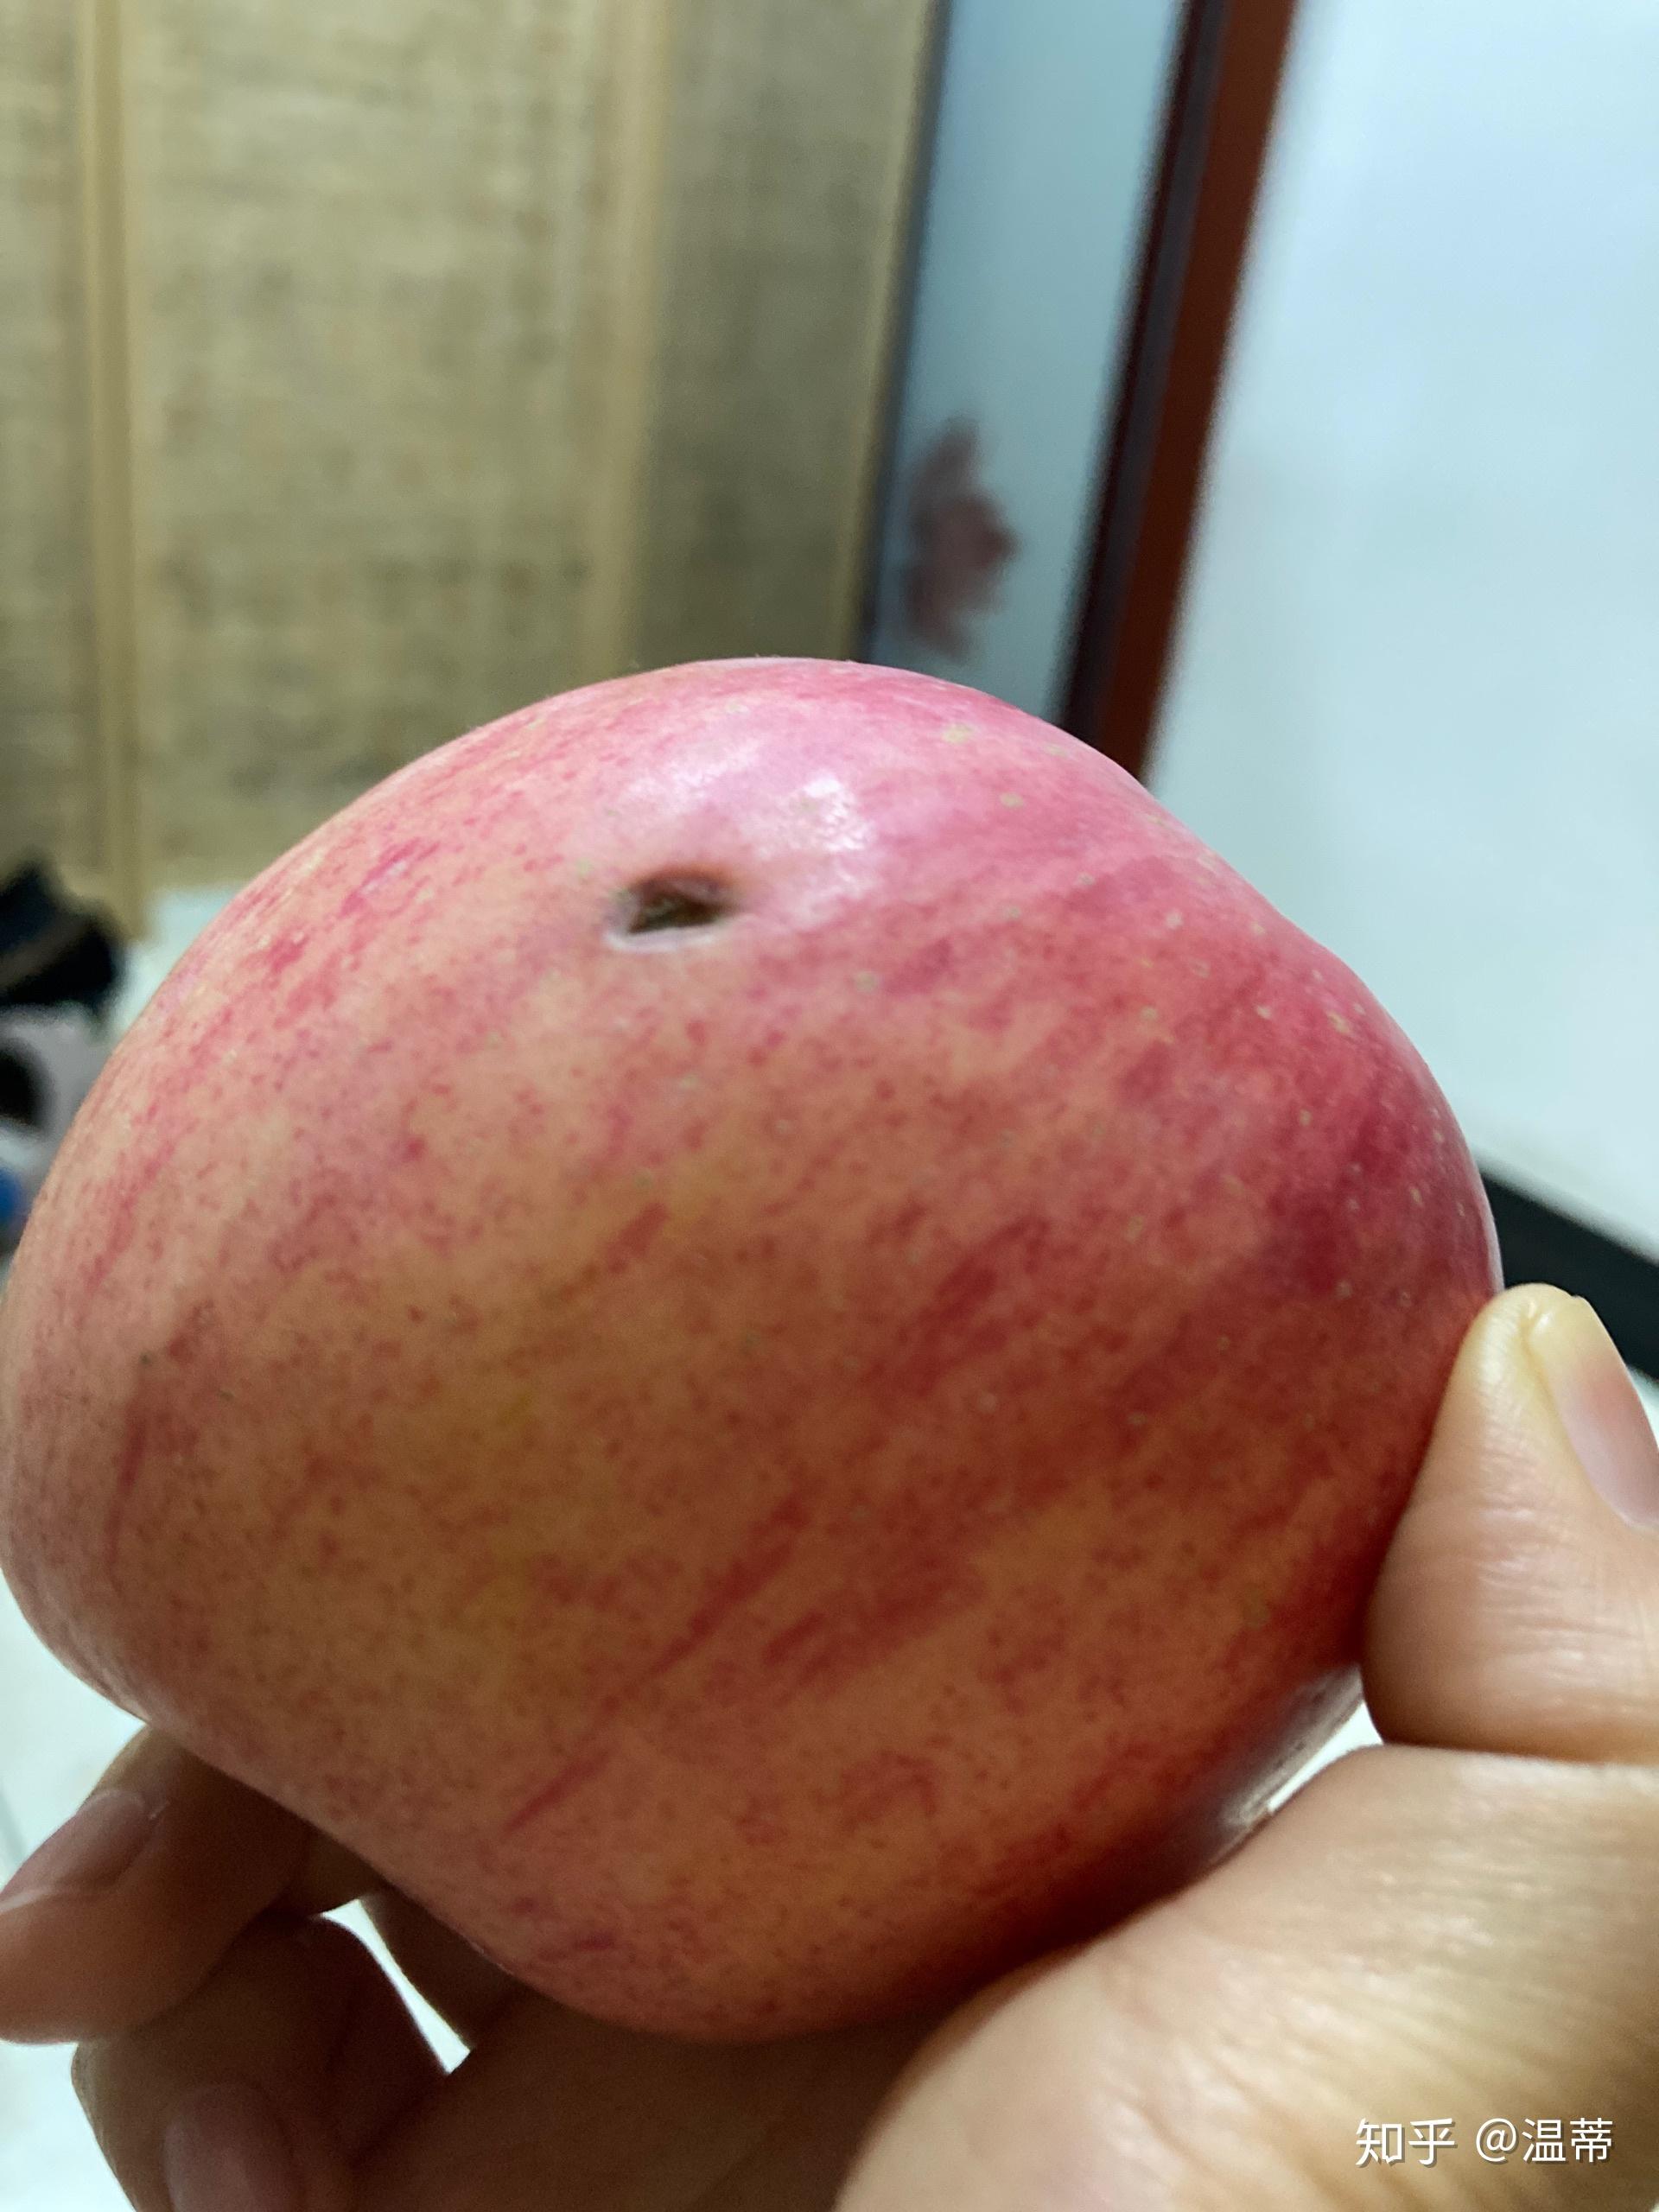 苹果上这个洞是被老鼠啃出来的吗